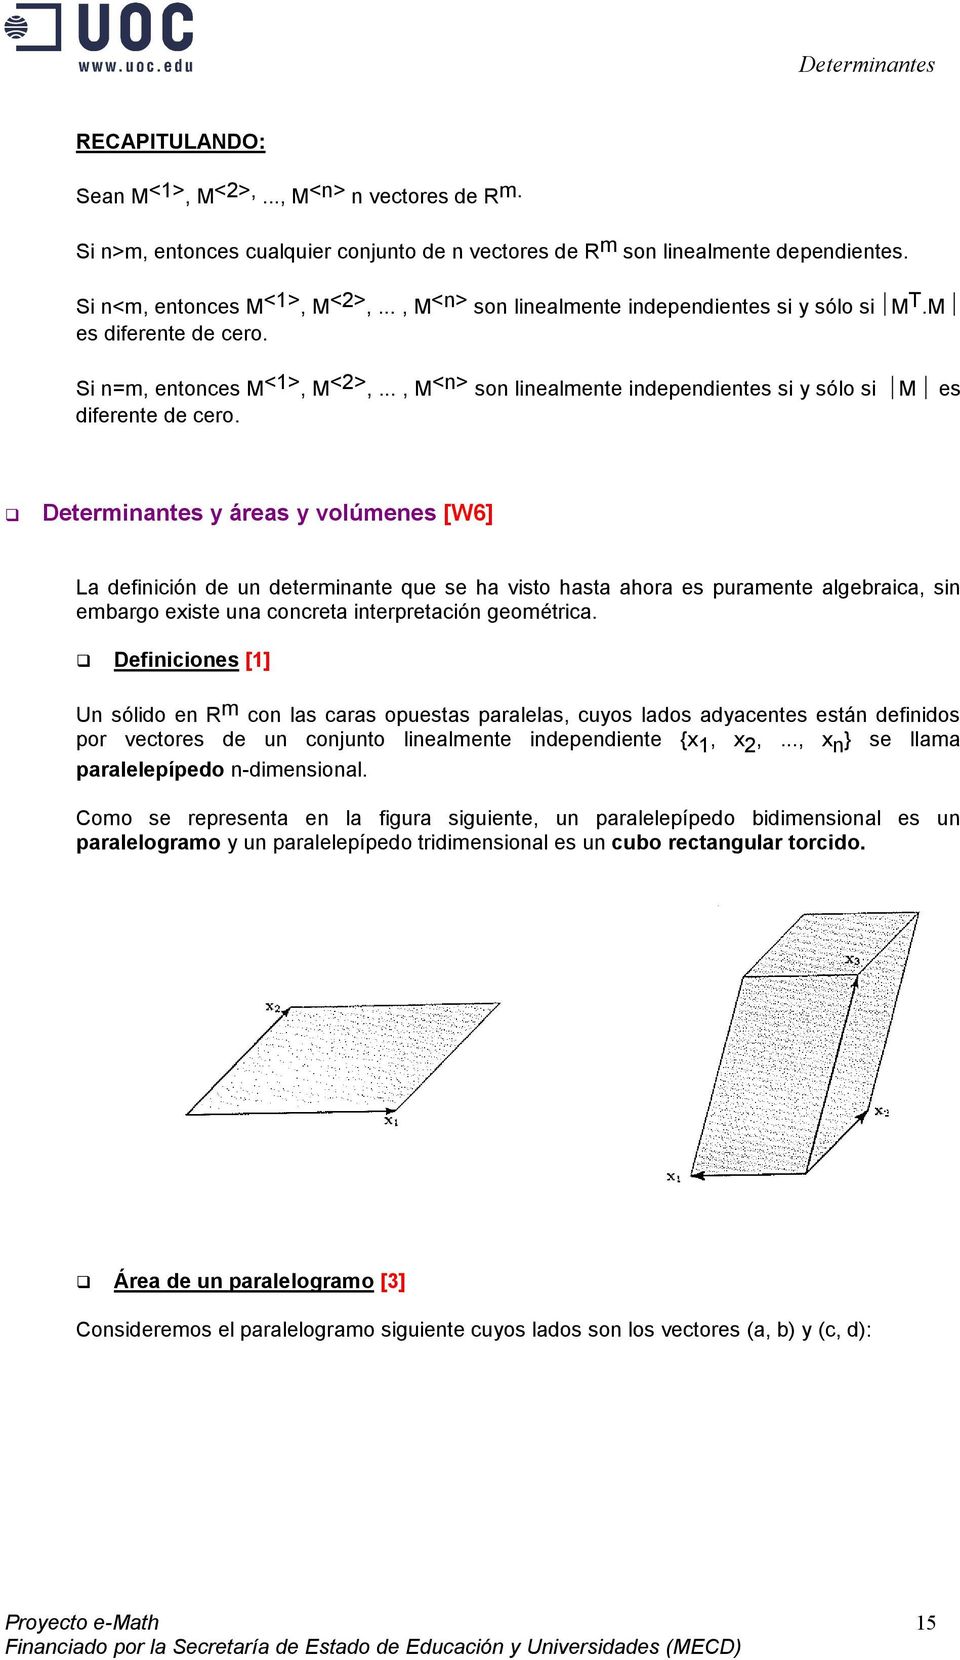 Determinntes y áres y volúmenes [W6] L definición de un determinnte que se h visto hst hor es purmente lgebric, sin embrgo existe un concret interpretción geométric.